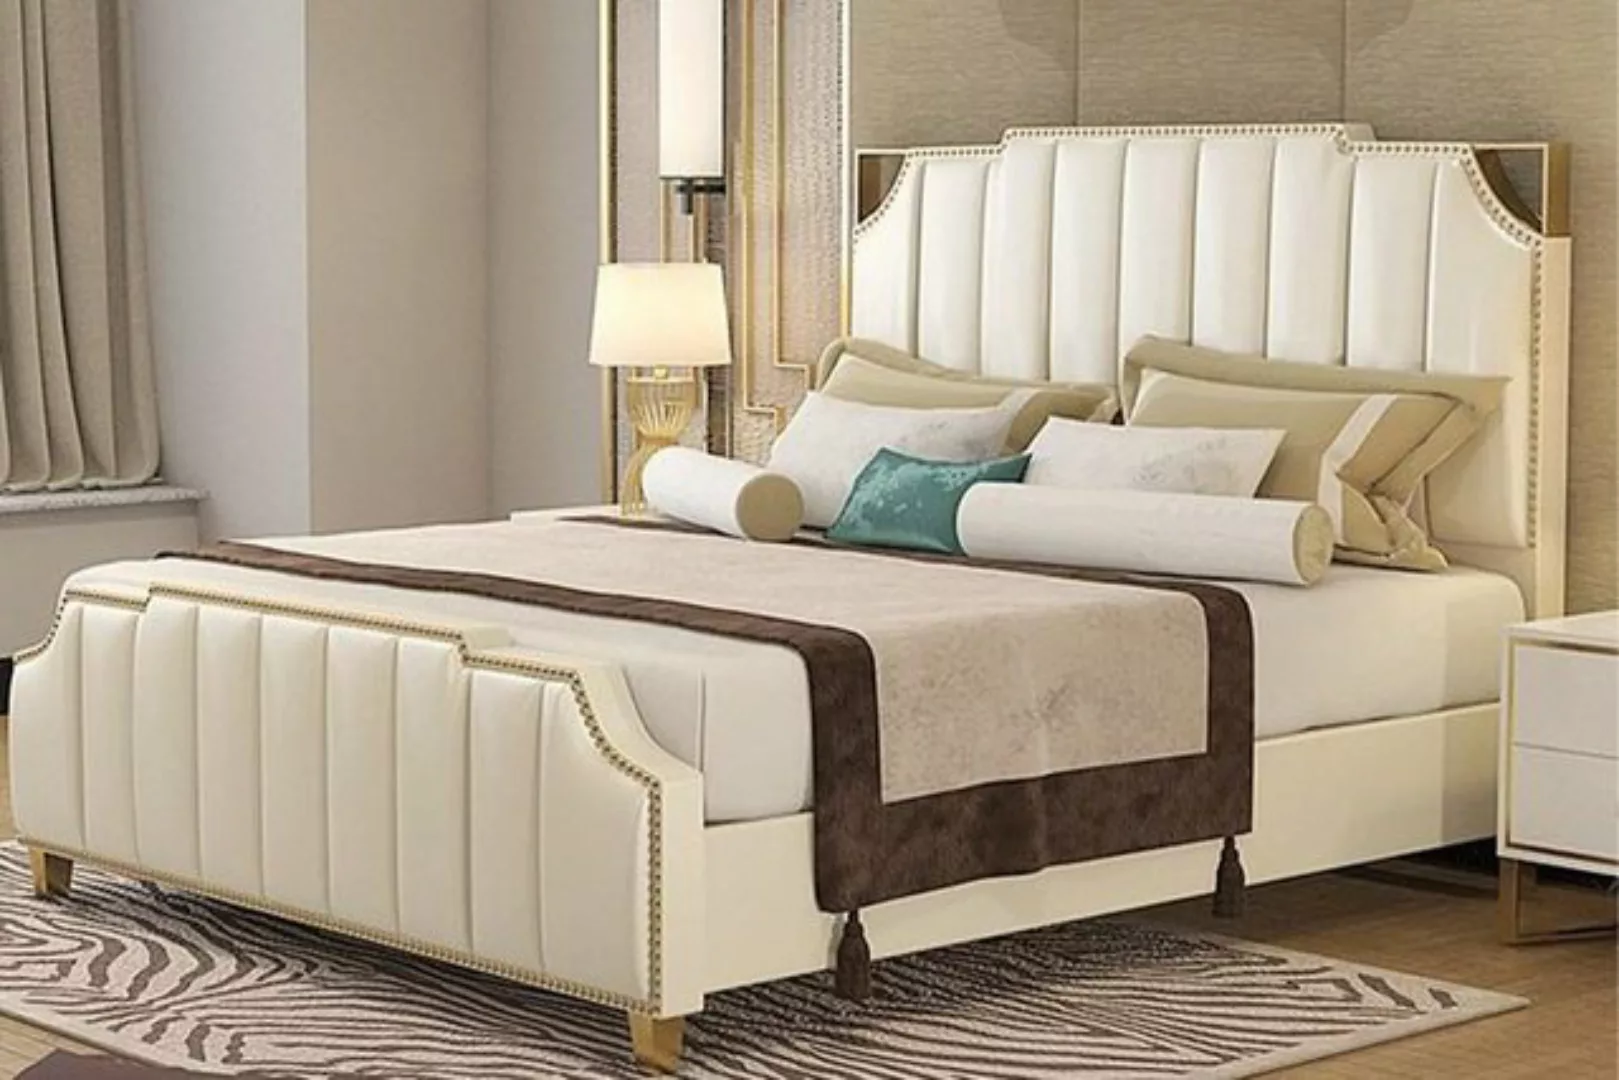 JVmoebel Bett, Design Doppelbett Bett Hotel Luxus Schlafzimmer 180x200cm günstig online kaufen